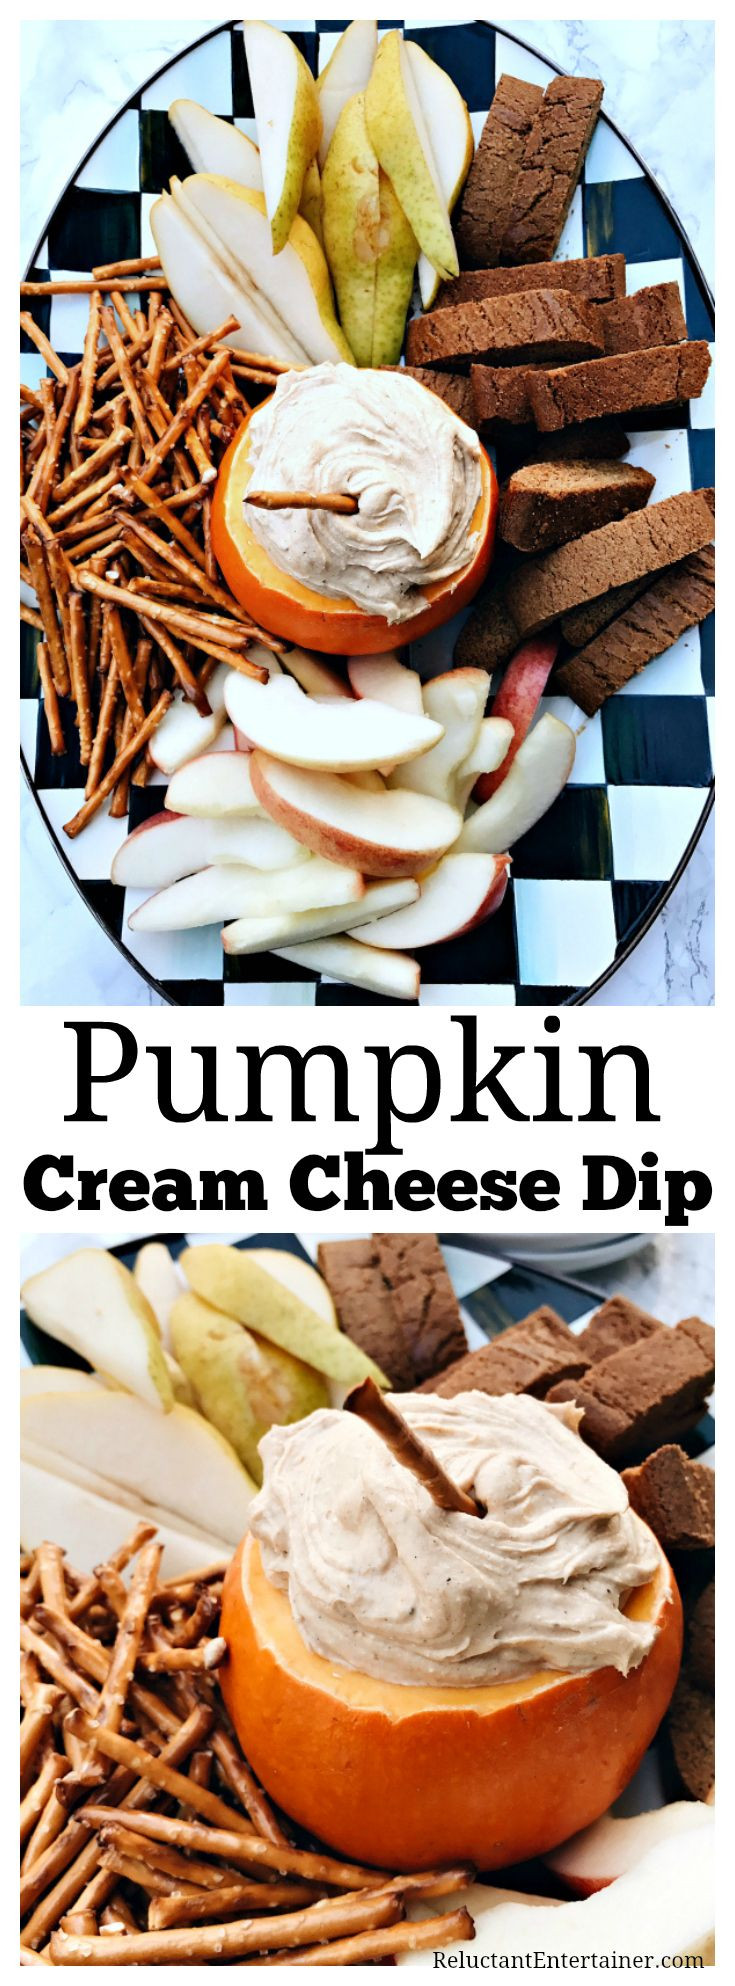 Pumpkin Cream Cheese Dip Recipes
 Pumpkin Cream Cheese Dip